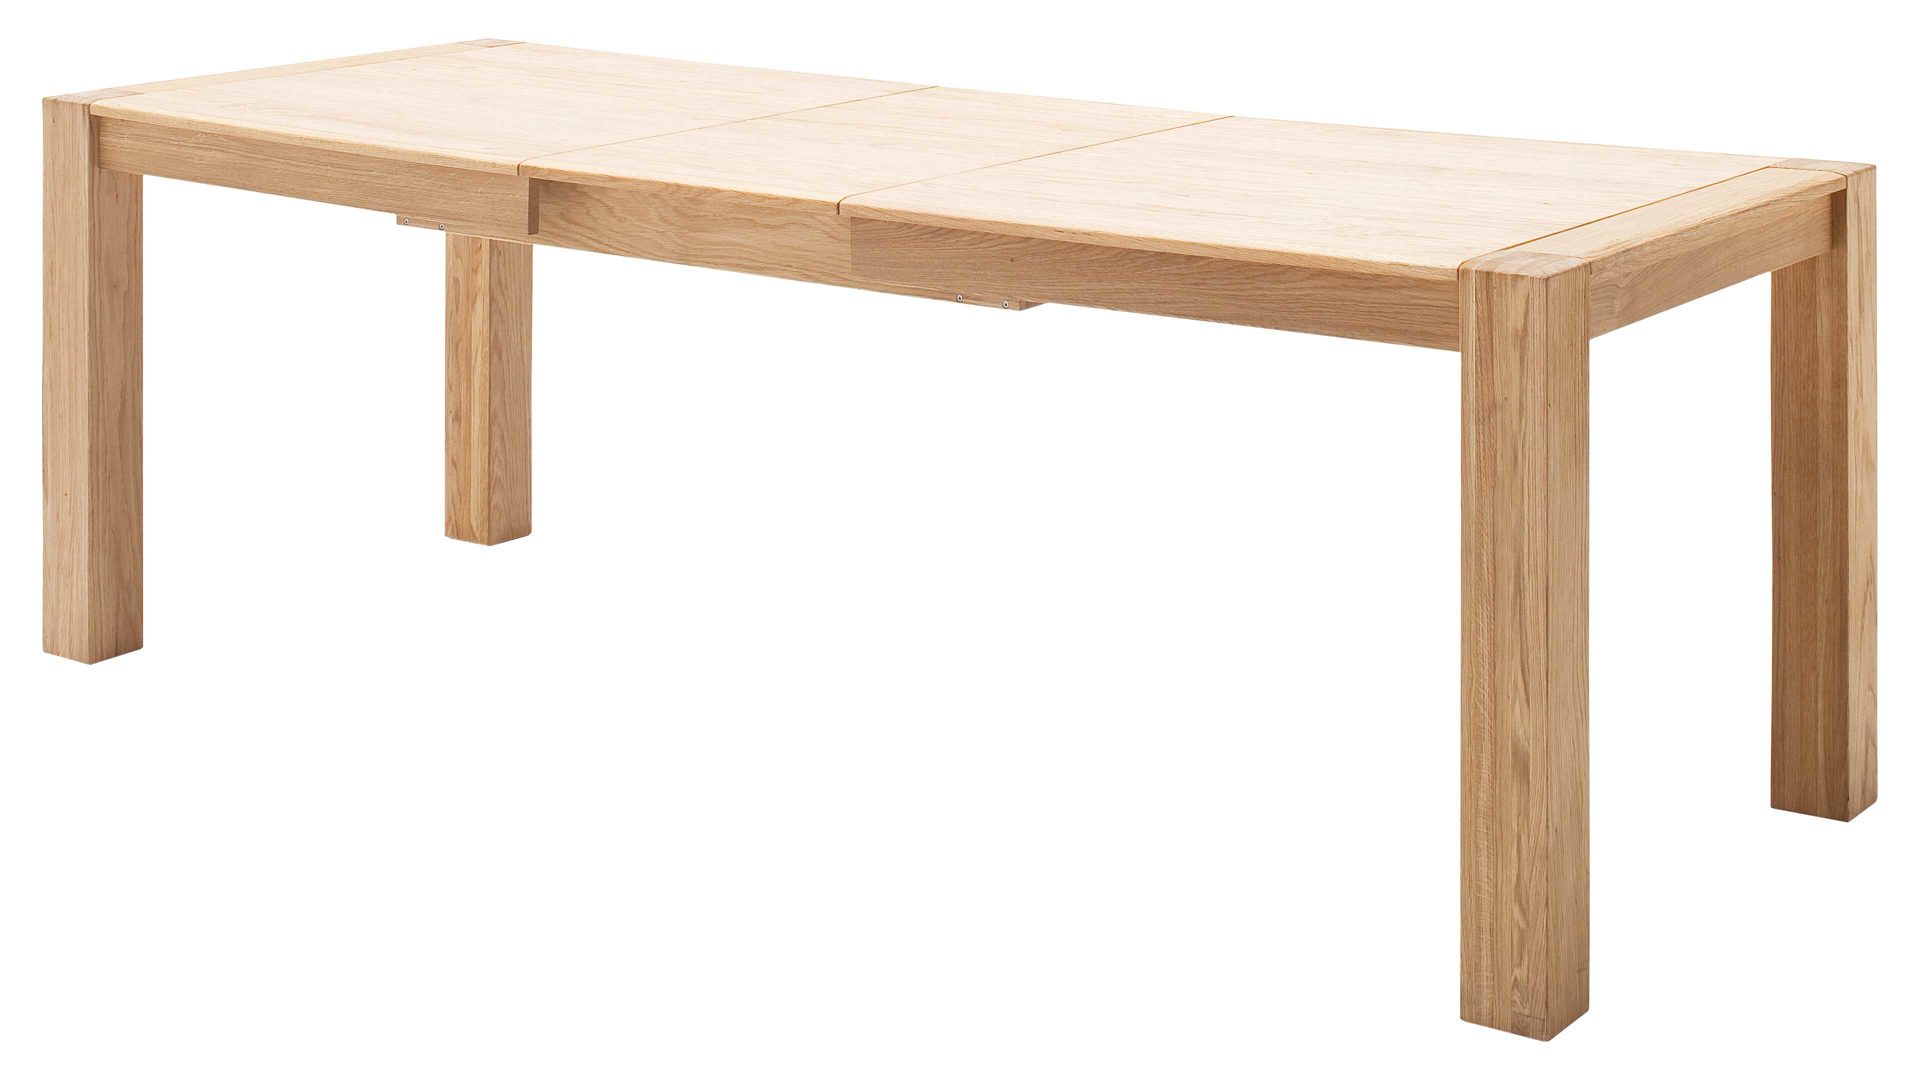 Auszugtisch Mca furniture aus Holz in Holzfarben Wohnprogramm Bologna - Ausziehtisch biancofarbenes Eichenholz – ca. 180 - 230 x 90 cm